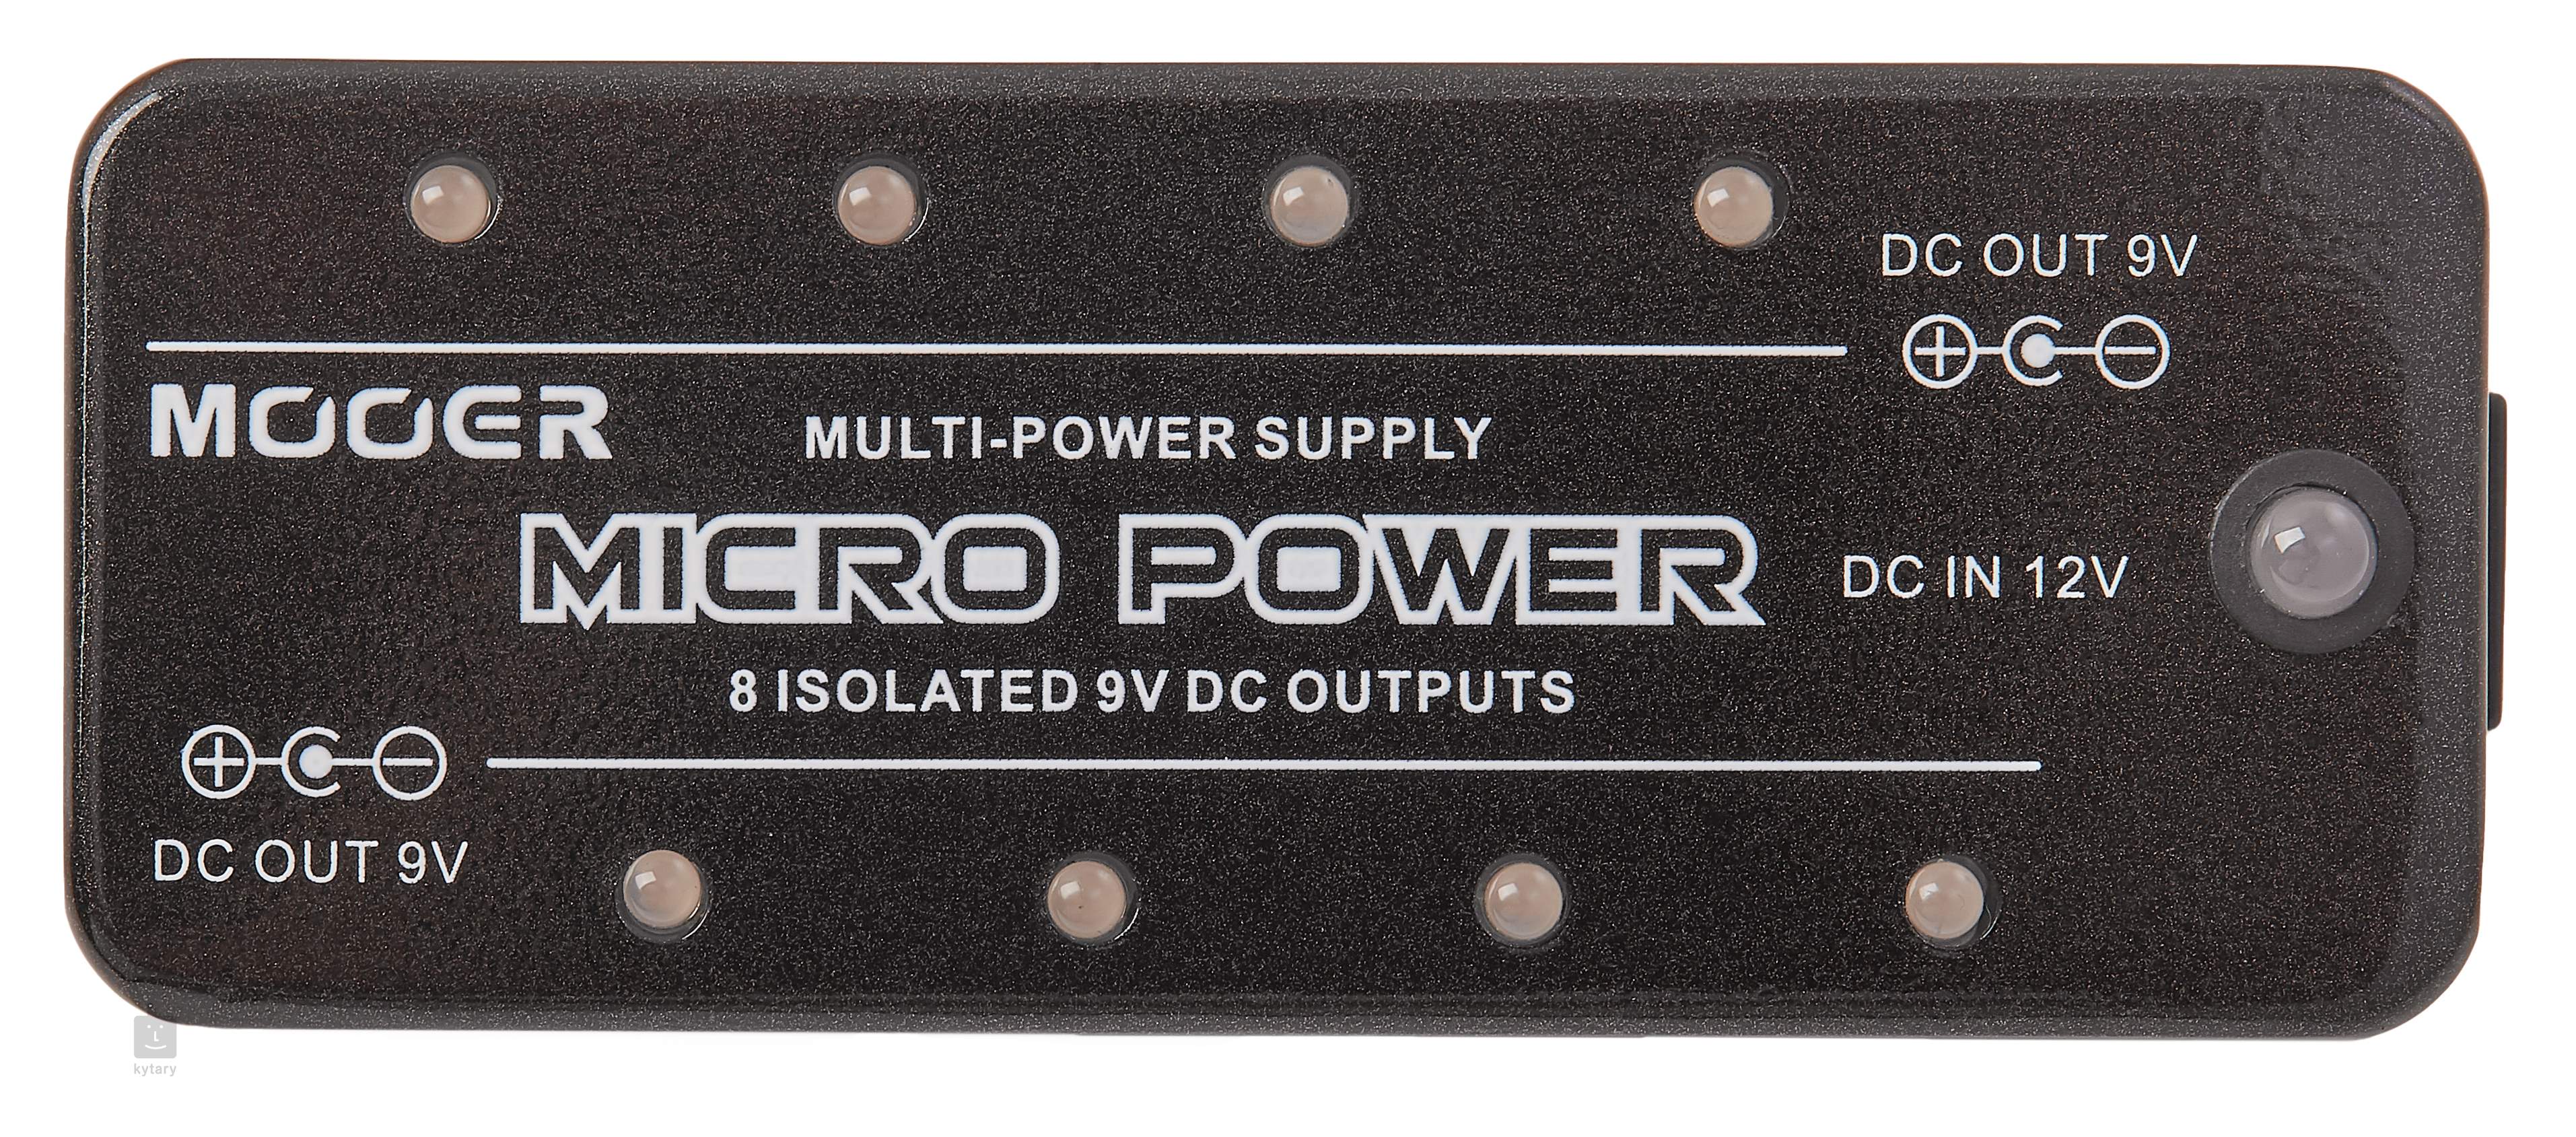 Micro power. Mooer Micro Power. Mooer Power Supply Micro. Mooer mbf1 Micro. Mooer Micro Drummer.